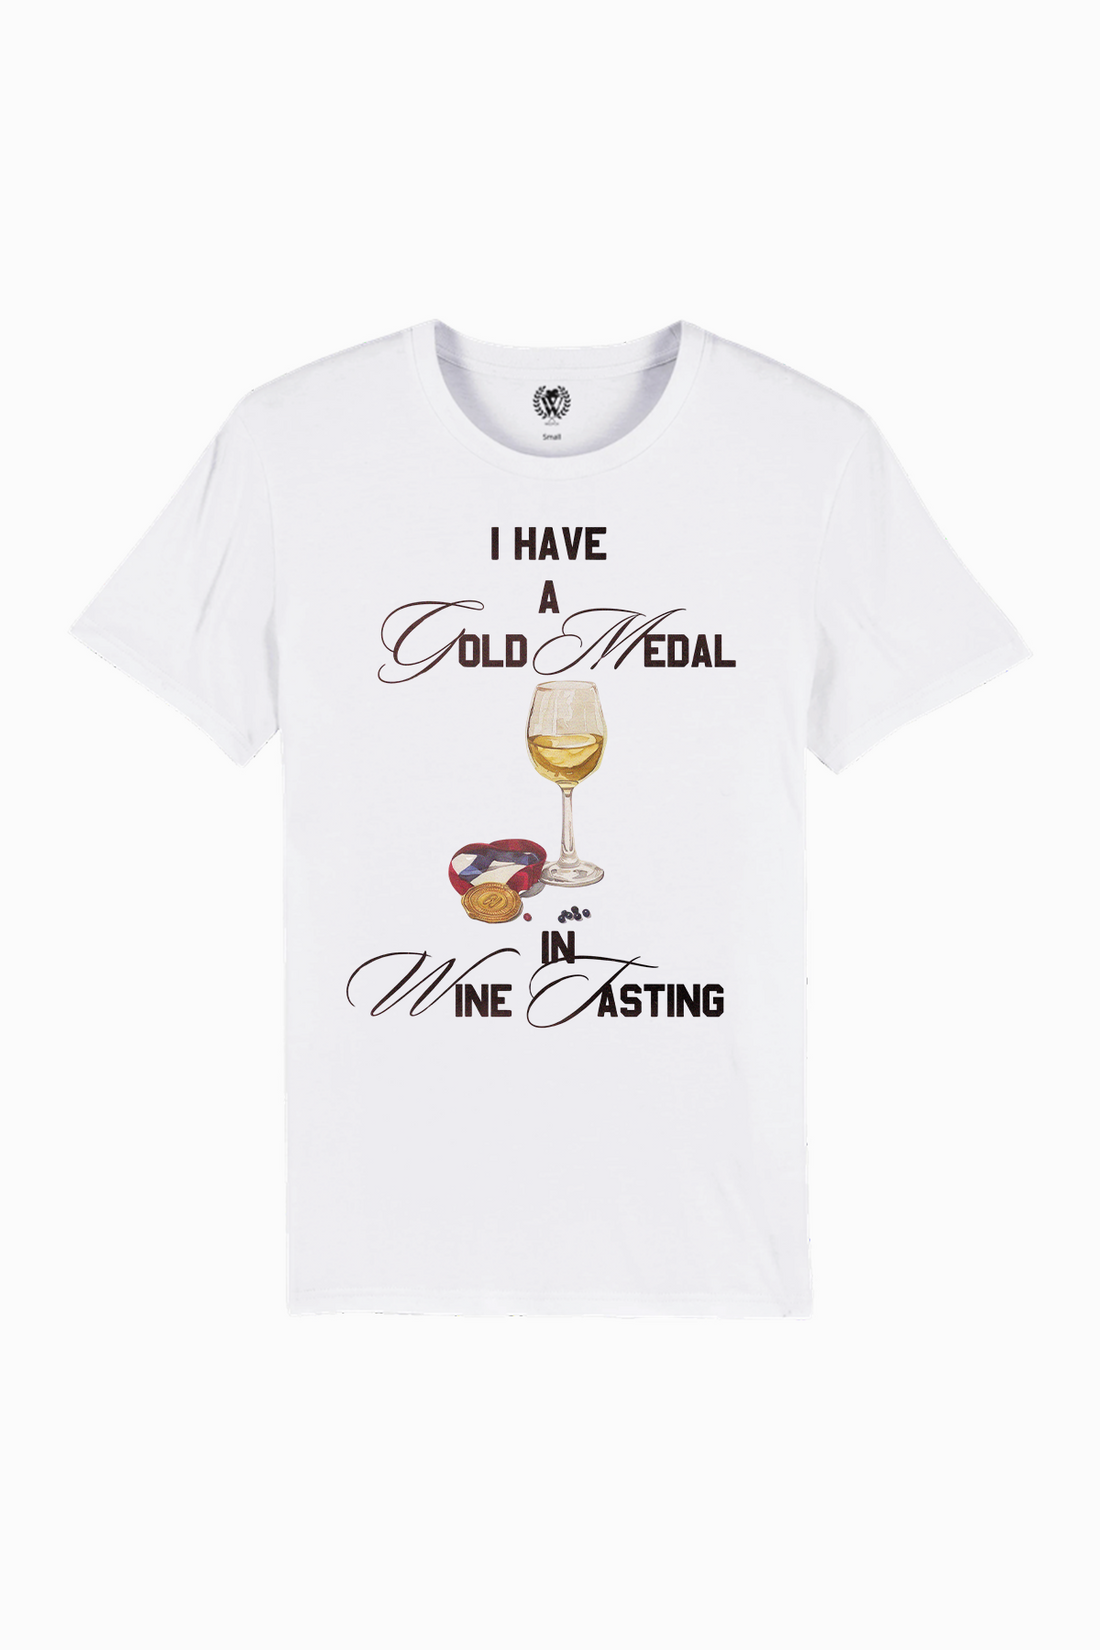 Gold Medal Wine Taster | Organic White